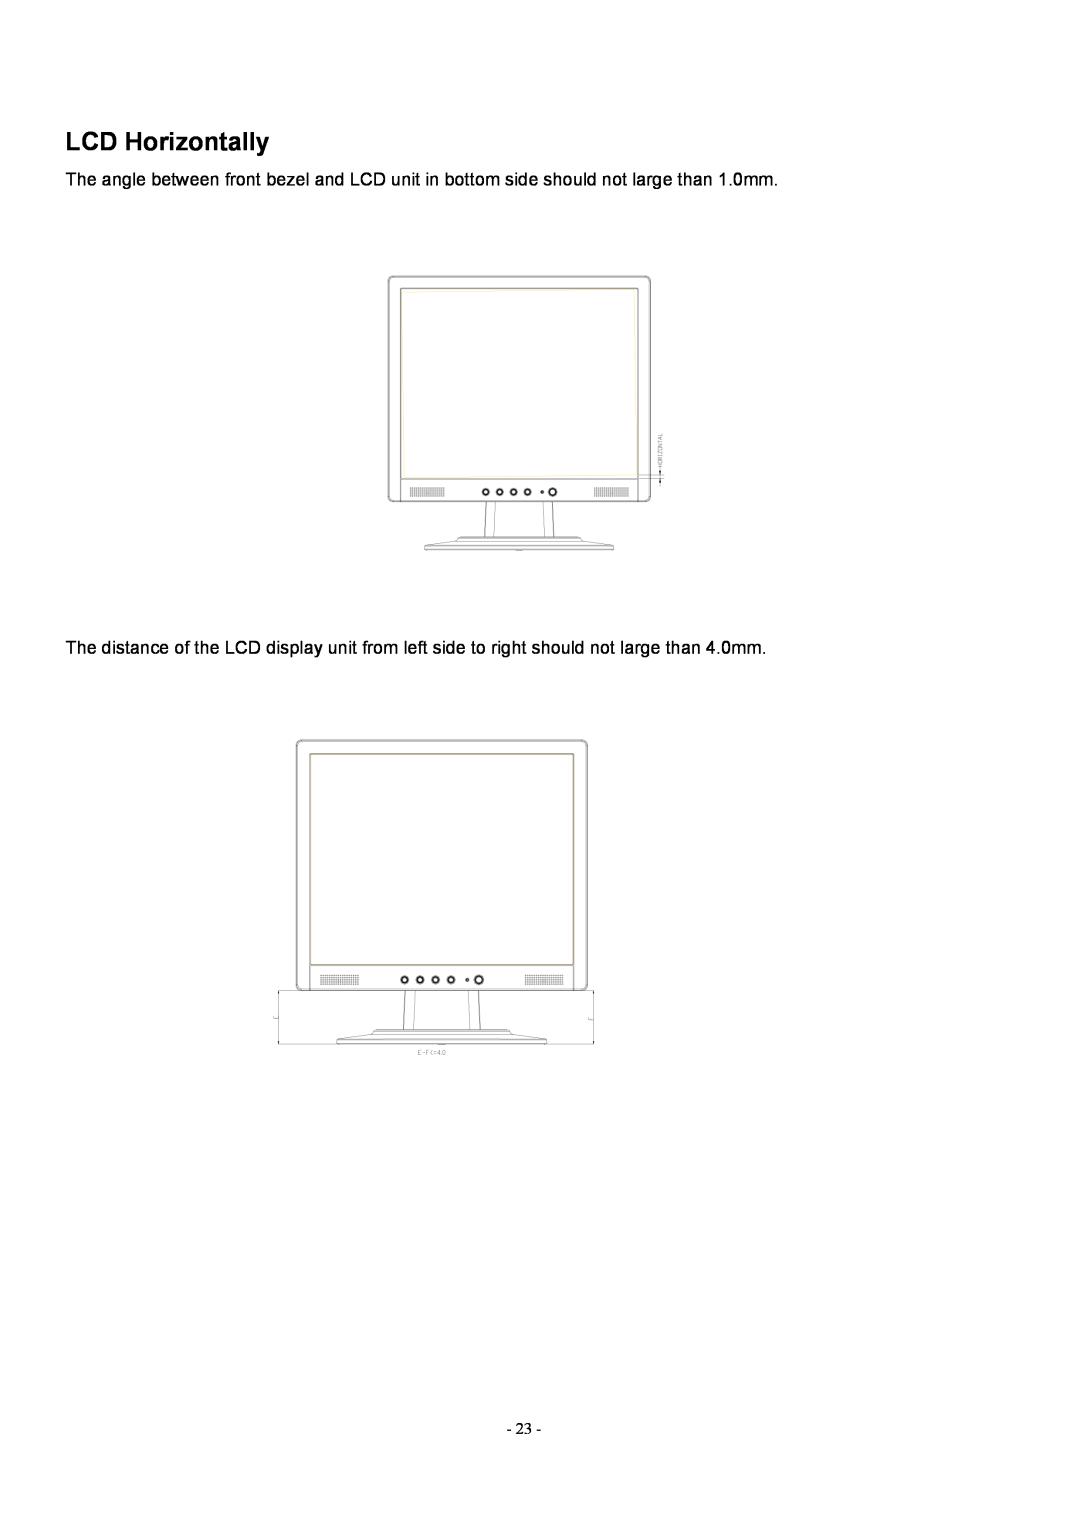 Acer AL1912 manual LCD Horizontally 